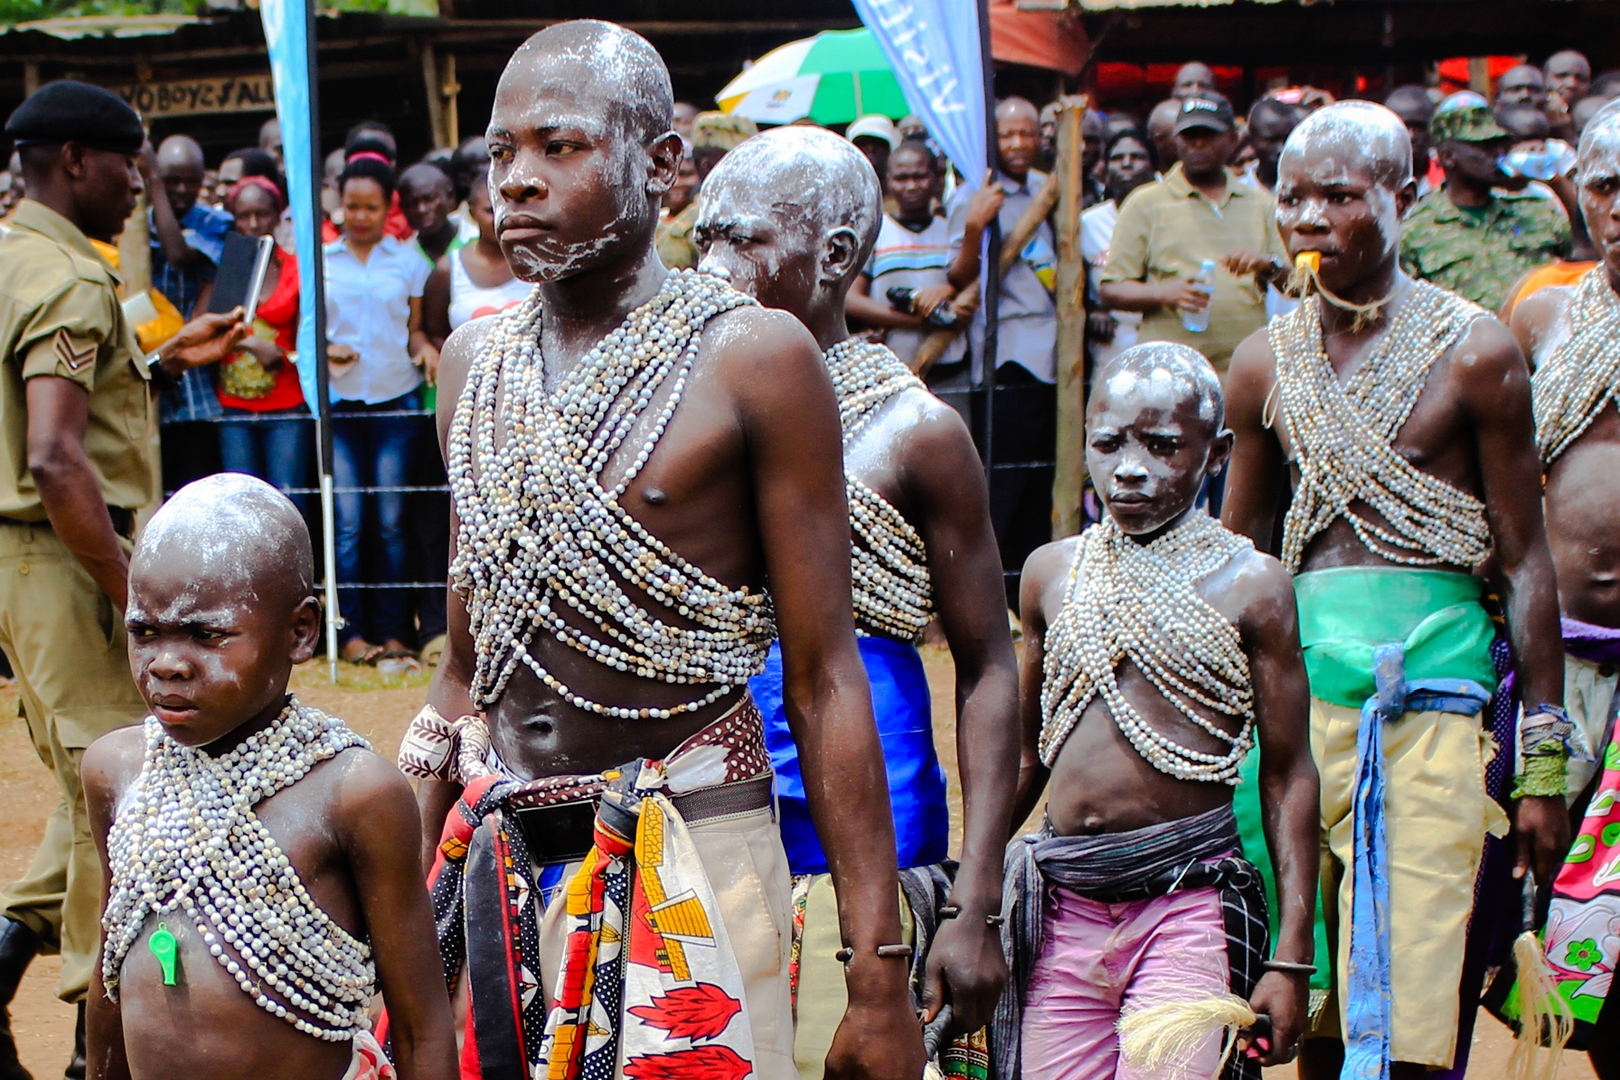 Imbalu traditional festival among the Bagishu people. Credit: Achieve Global Safaris